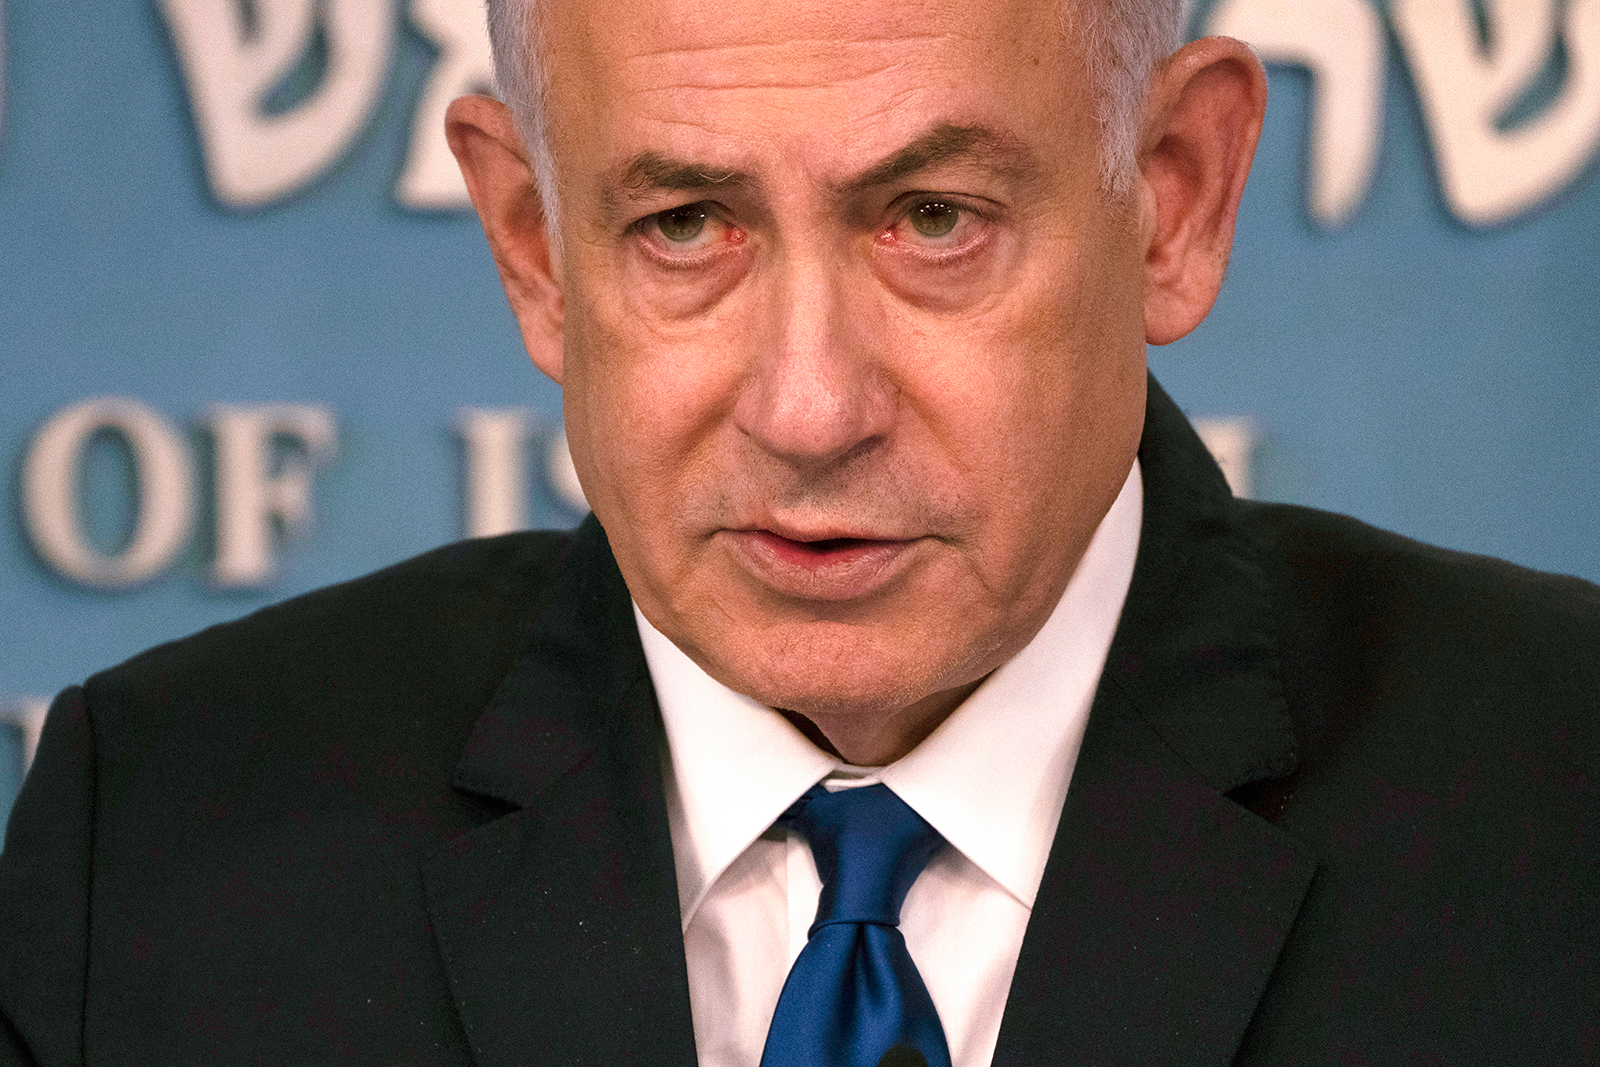 Benjamin Netanyahu delivers a speech in Jerusalem, on March 17.